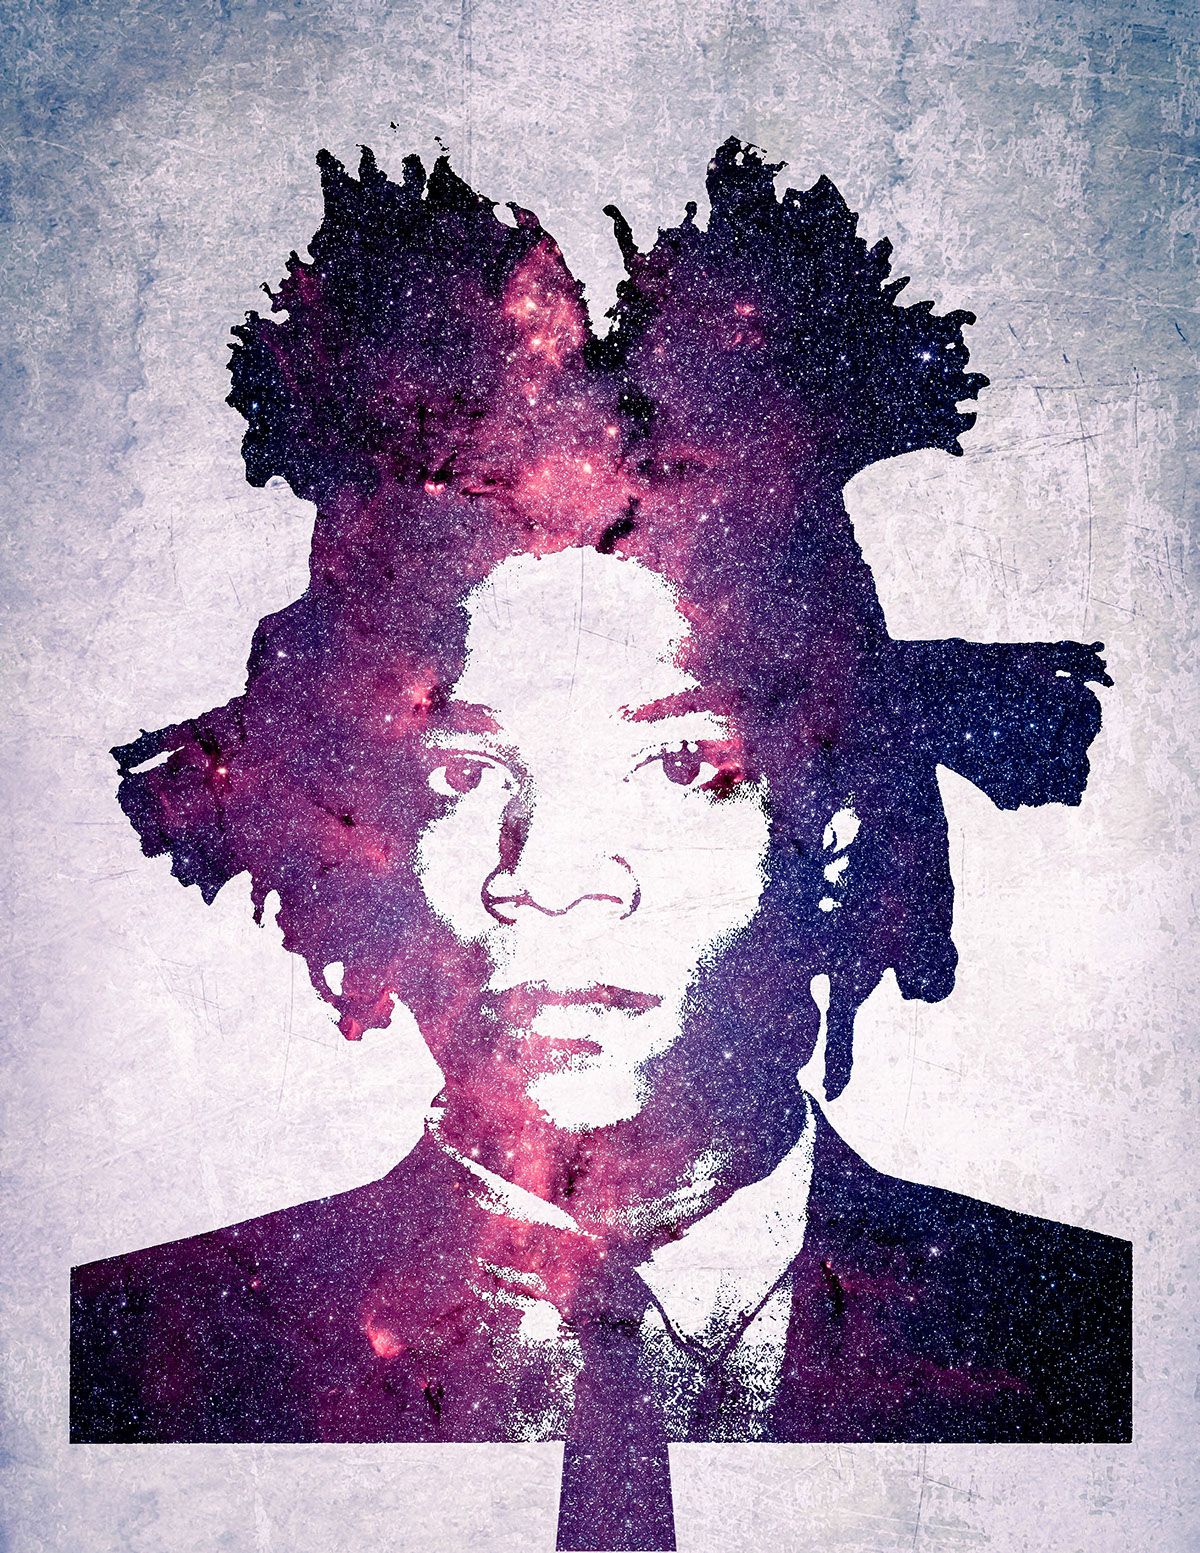 manipulations jean michel basquiat radiant child Basquiat samo grafitti life art Jean Michel NYC art